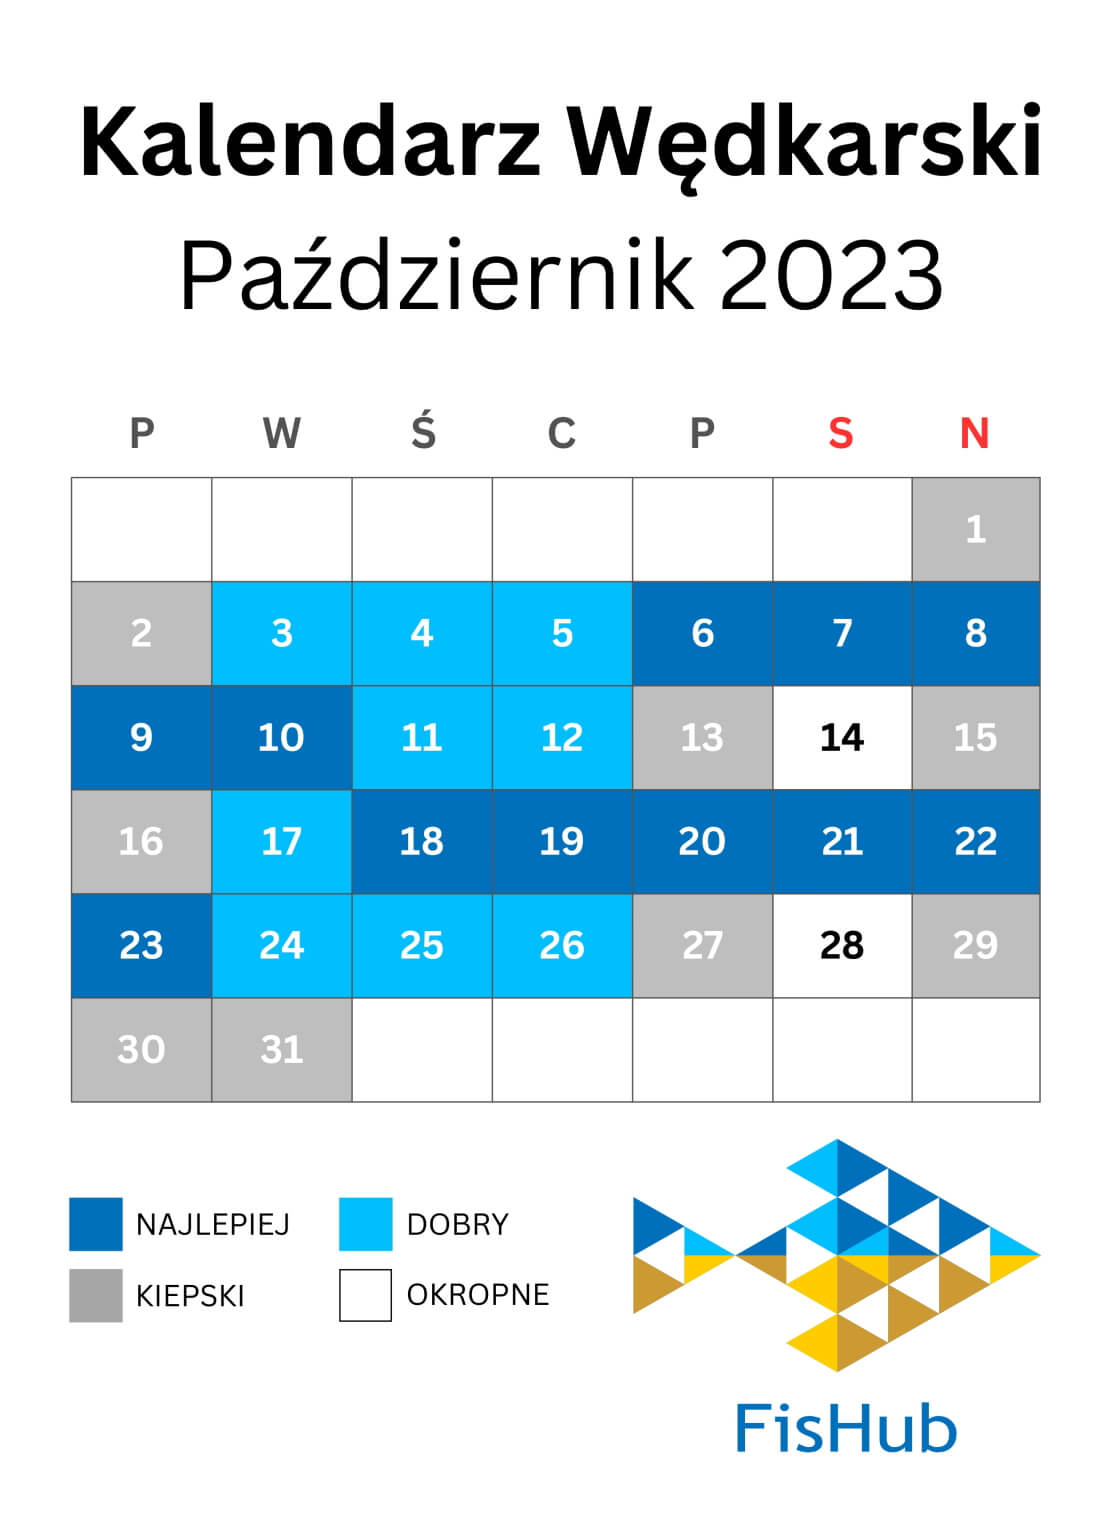 Kalendarz rybaka na październik 2023